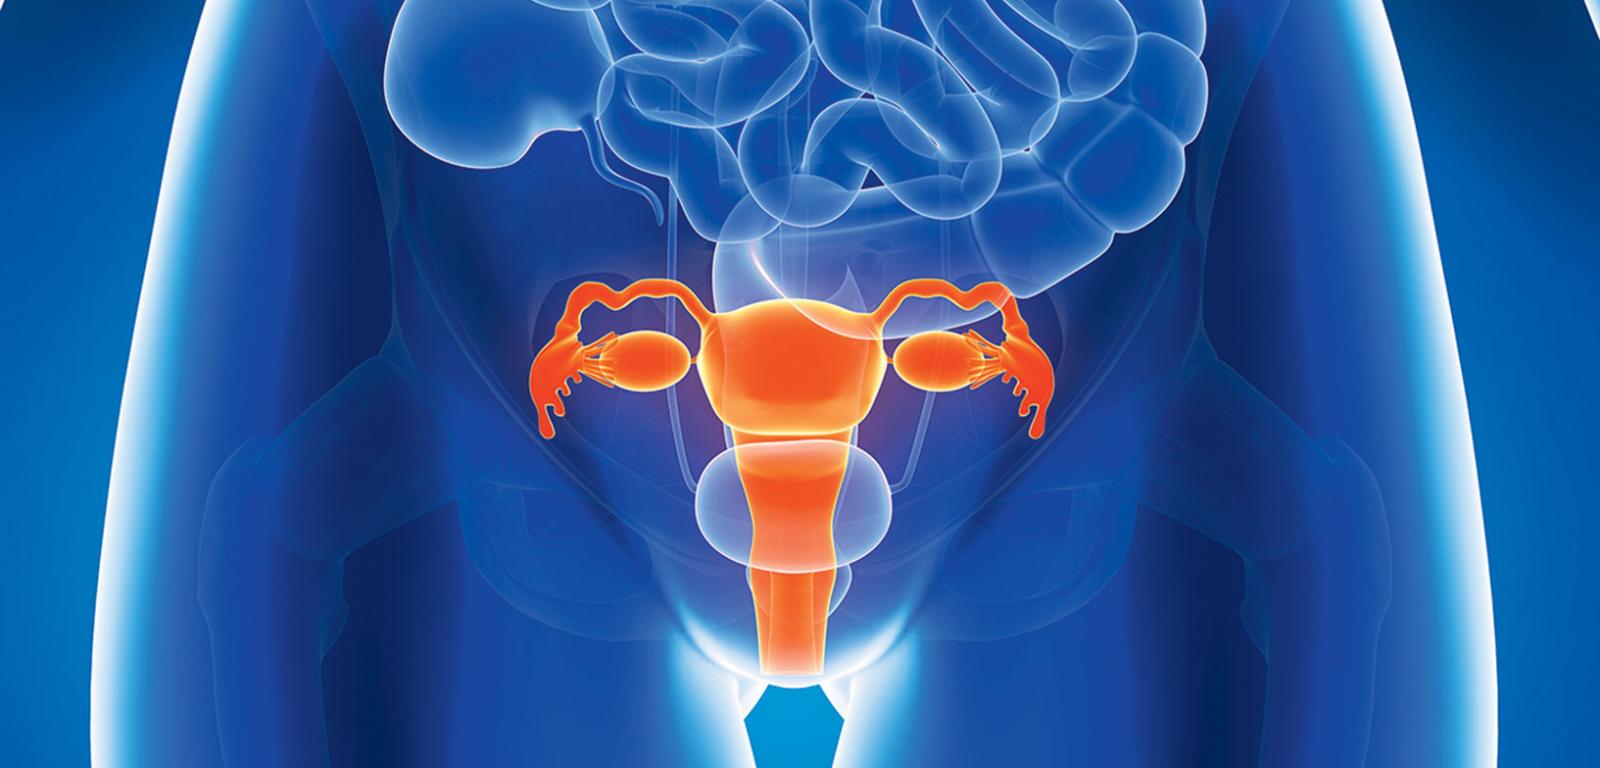 Żeńskie narządy płciowe – pomarańczowym kolorem oznaczono macicę, jajowody i jajniki.